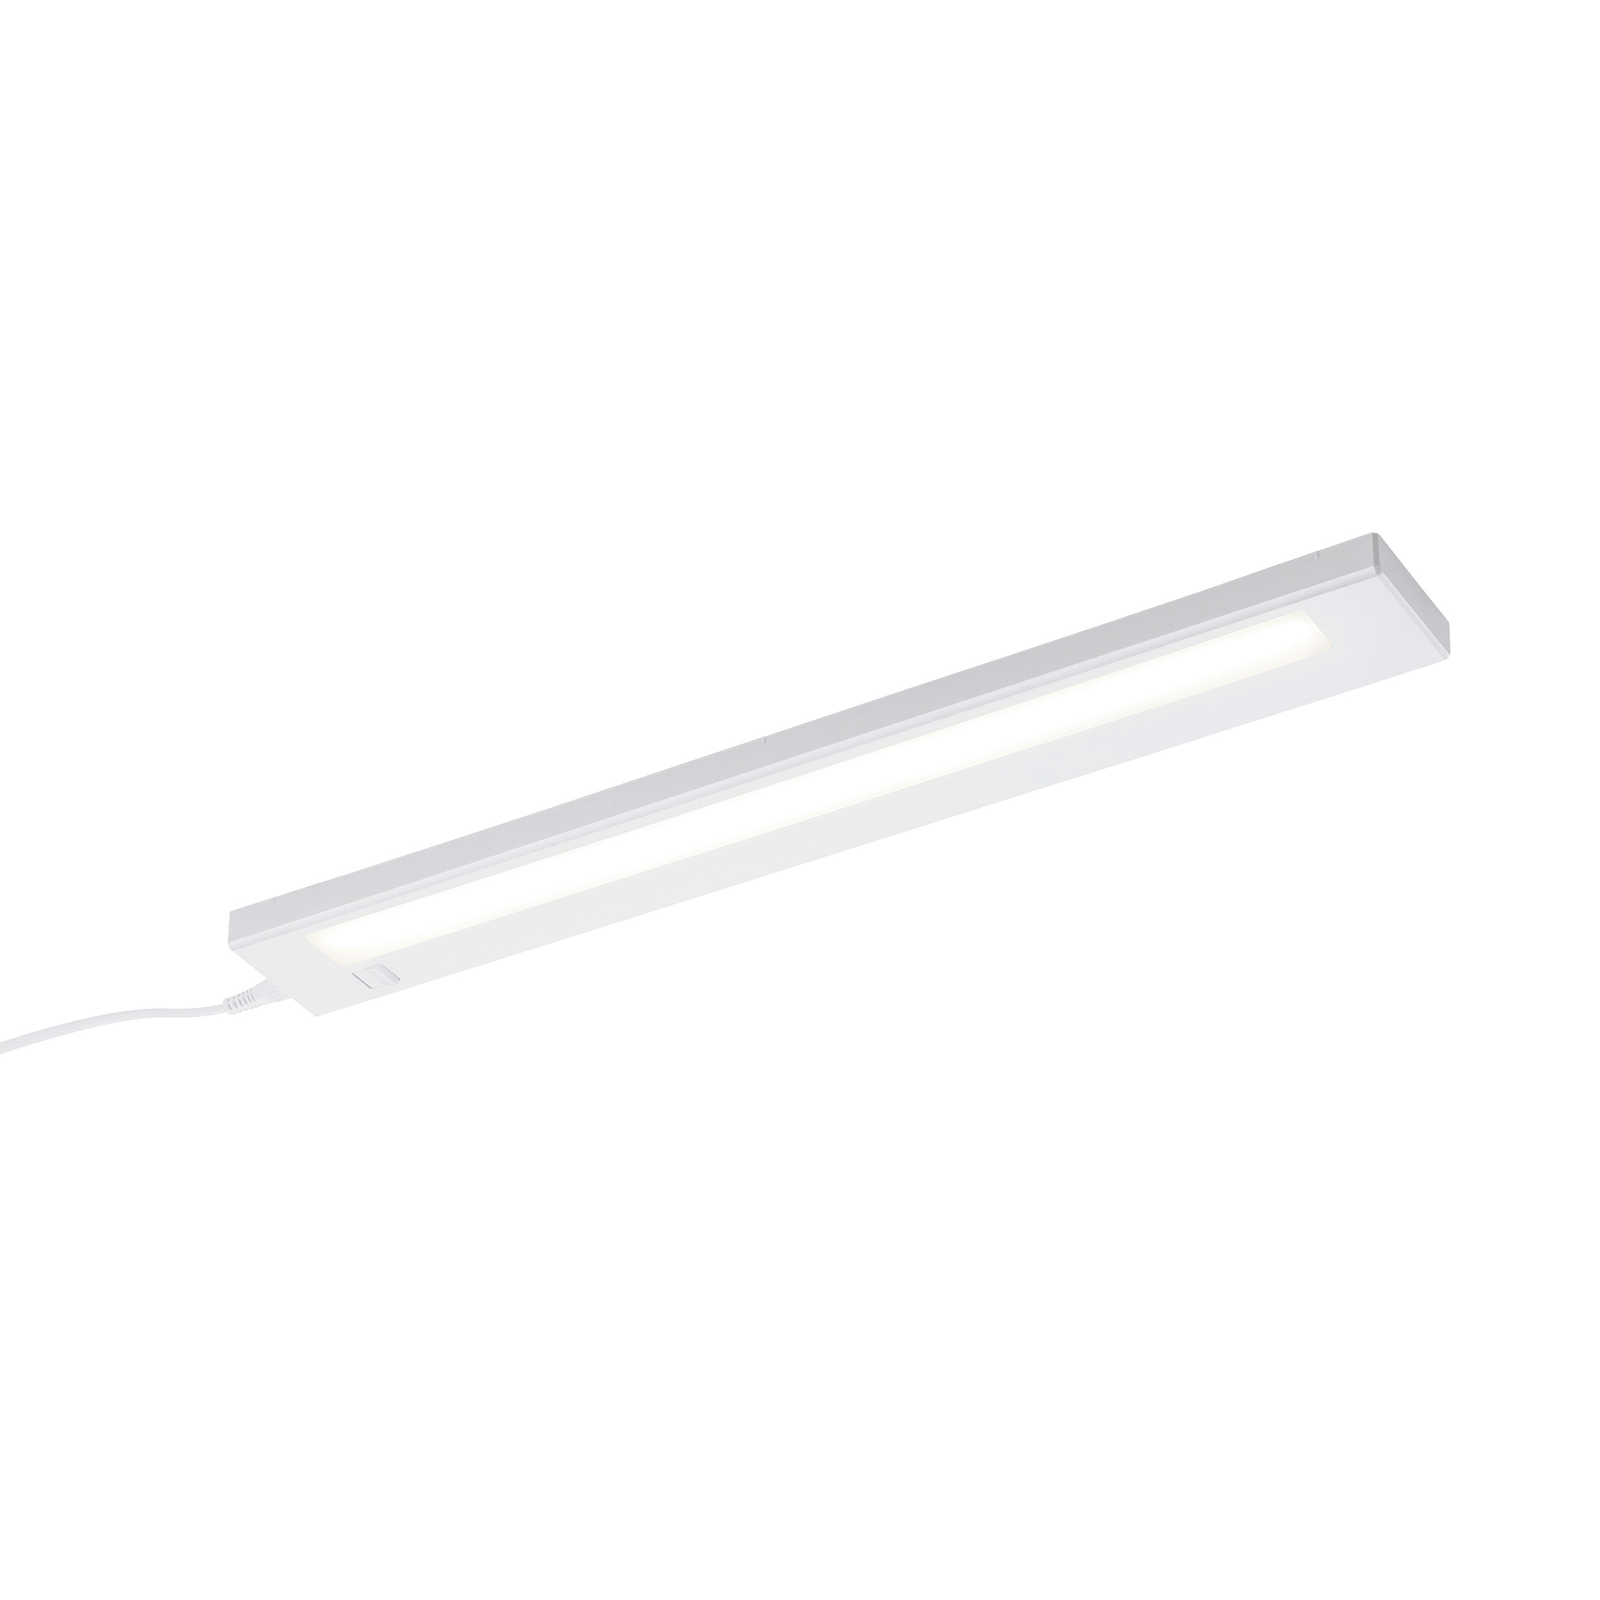 LED-bänklampa Alino, vit, längd 55 cm